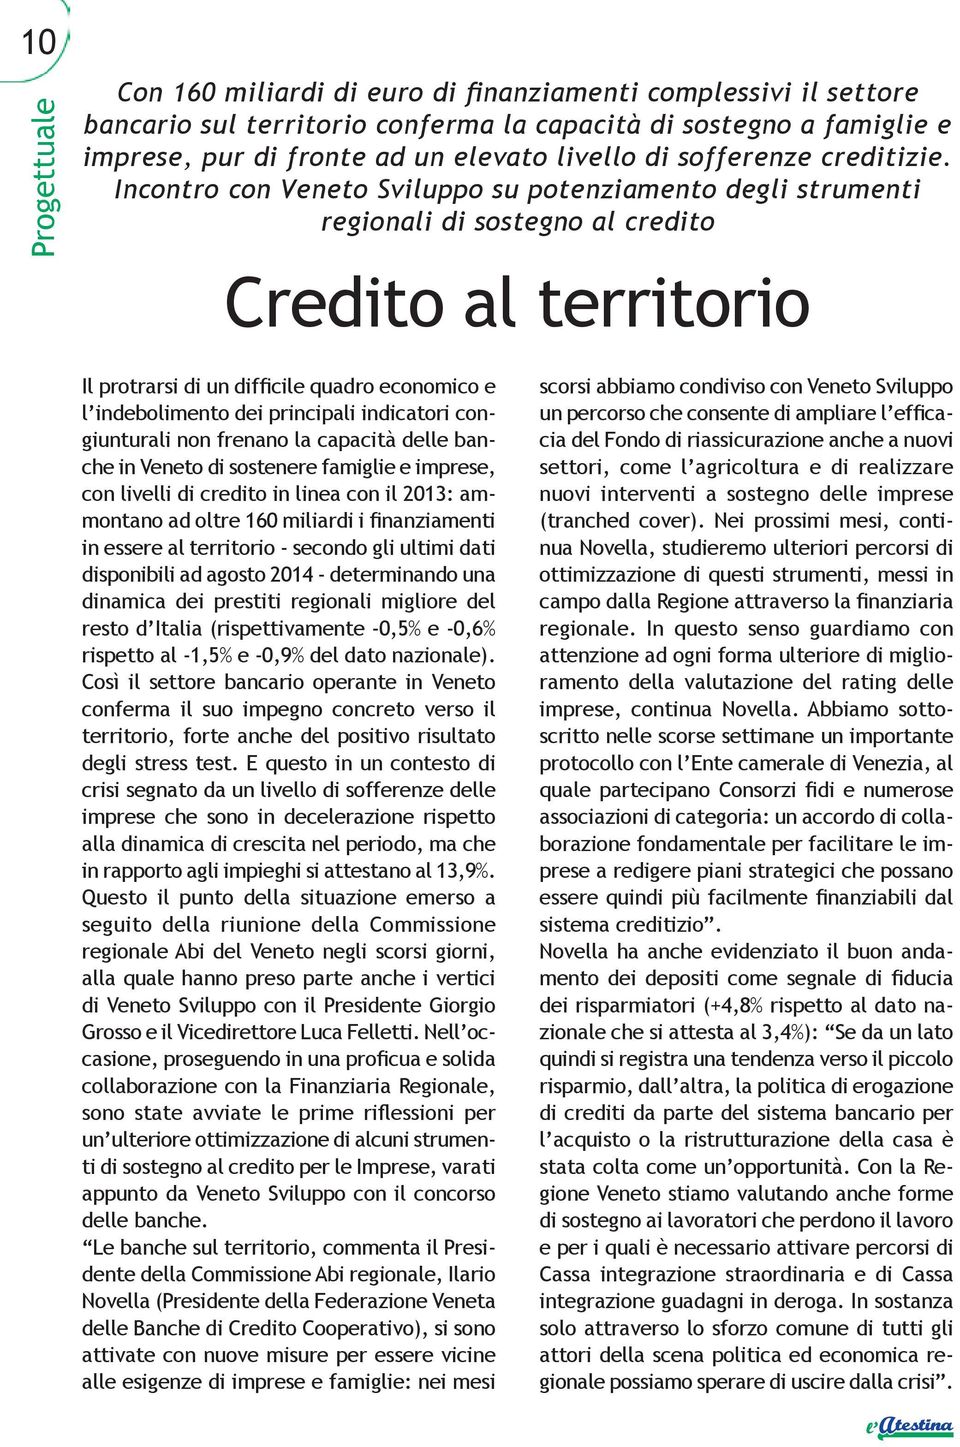 Incontro con Veneto Sviluppo su potenziamento degli strumenti regionali di sostegno al credito Credito al territorio Il protrarsi di un difficile quadro economico e l indebolimento dei principali